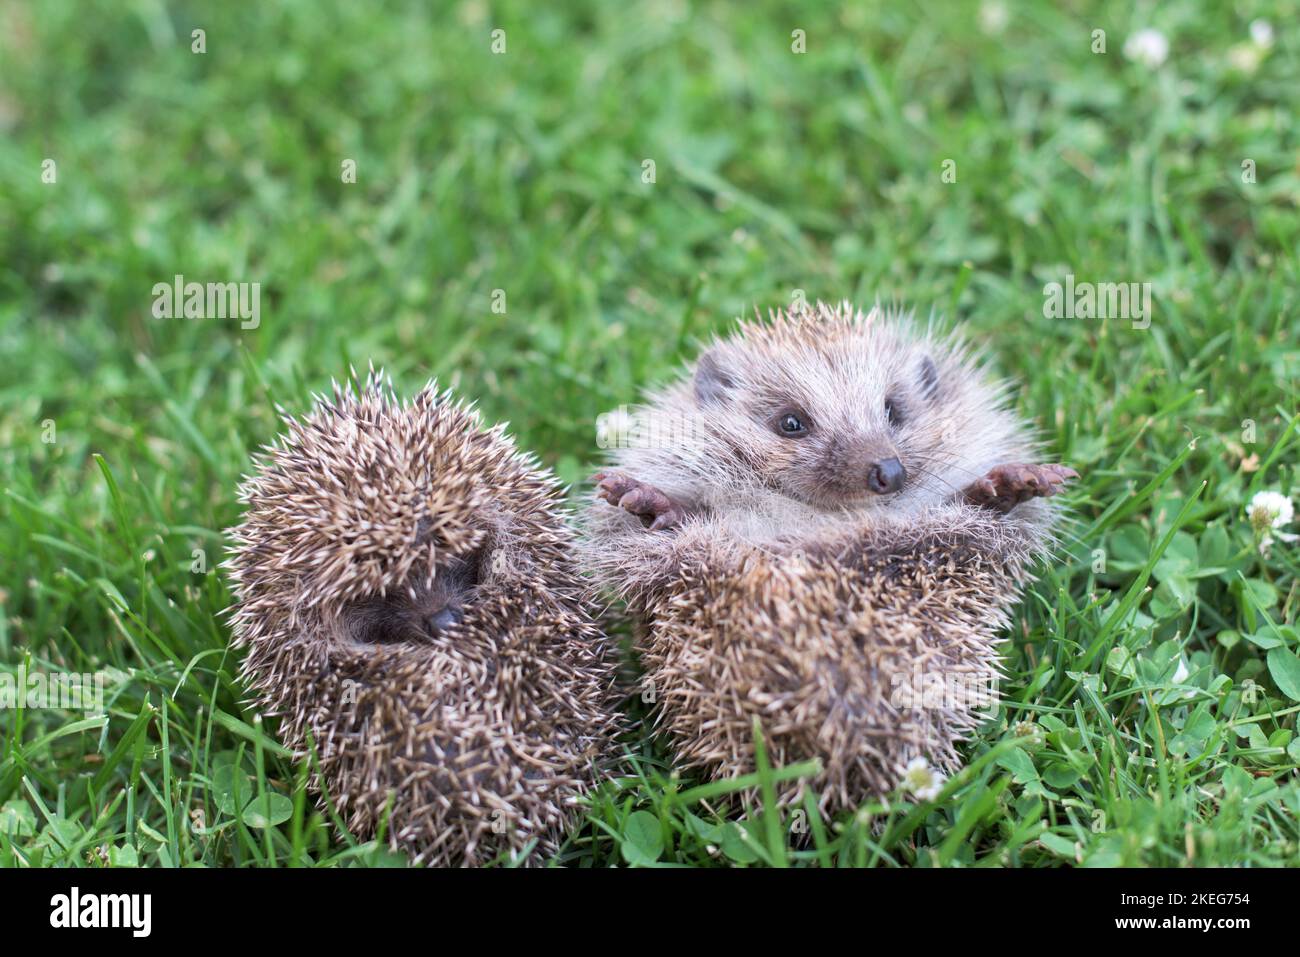 Deux petits hérissons se sont courbés dans une balle sur l'herbe Banque D'Images